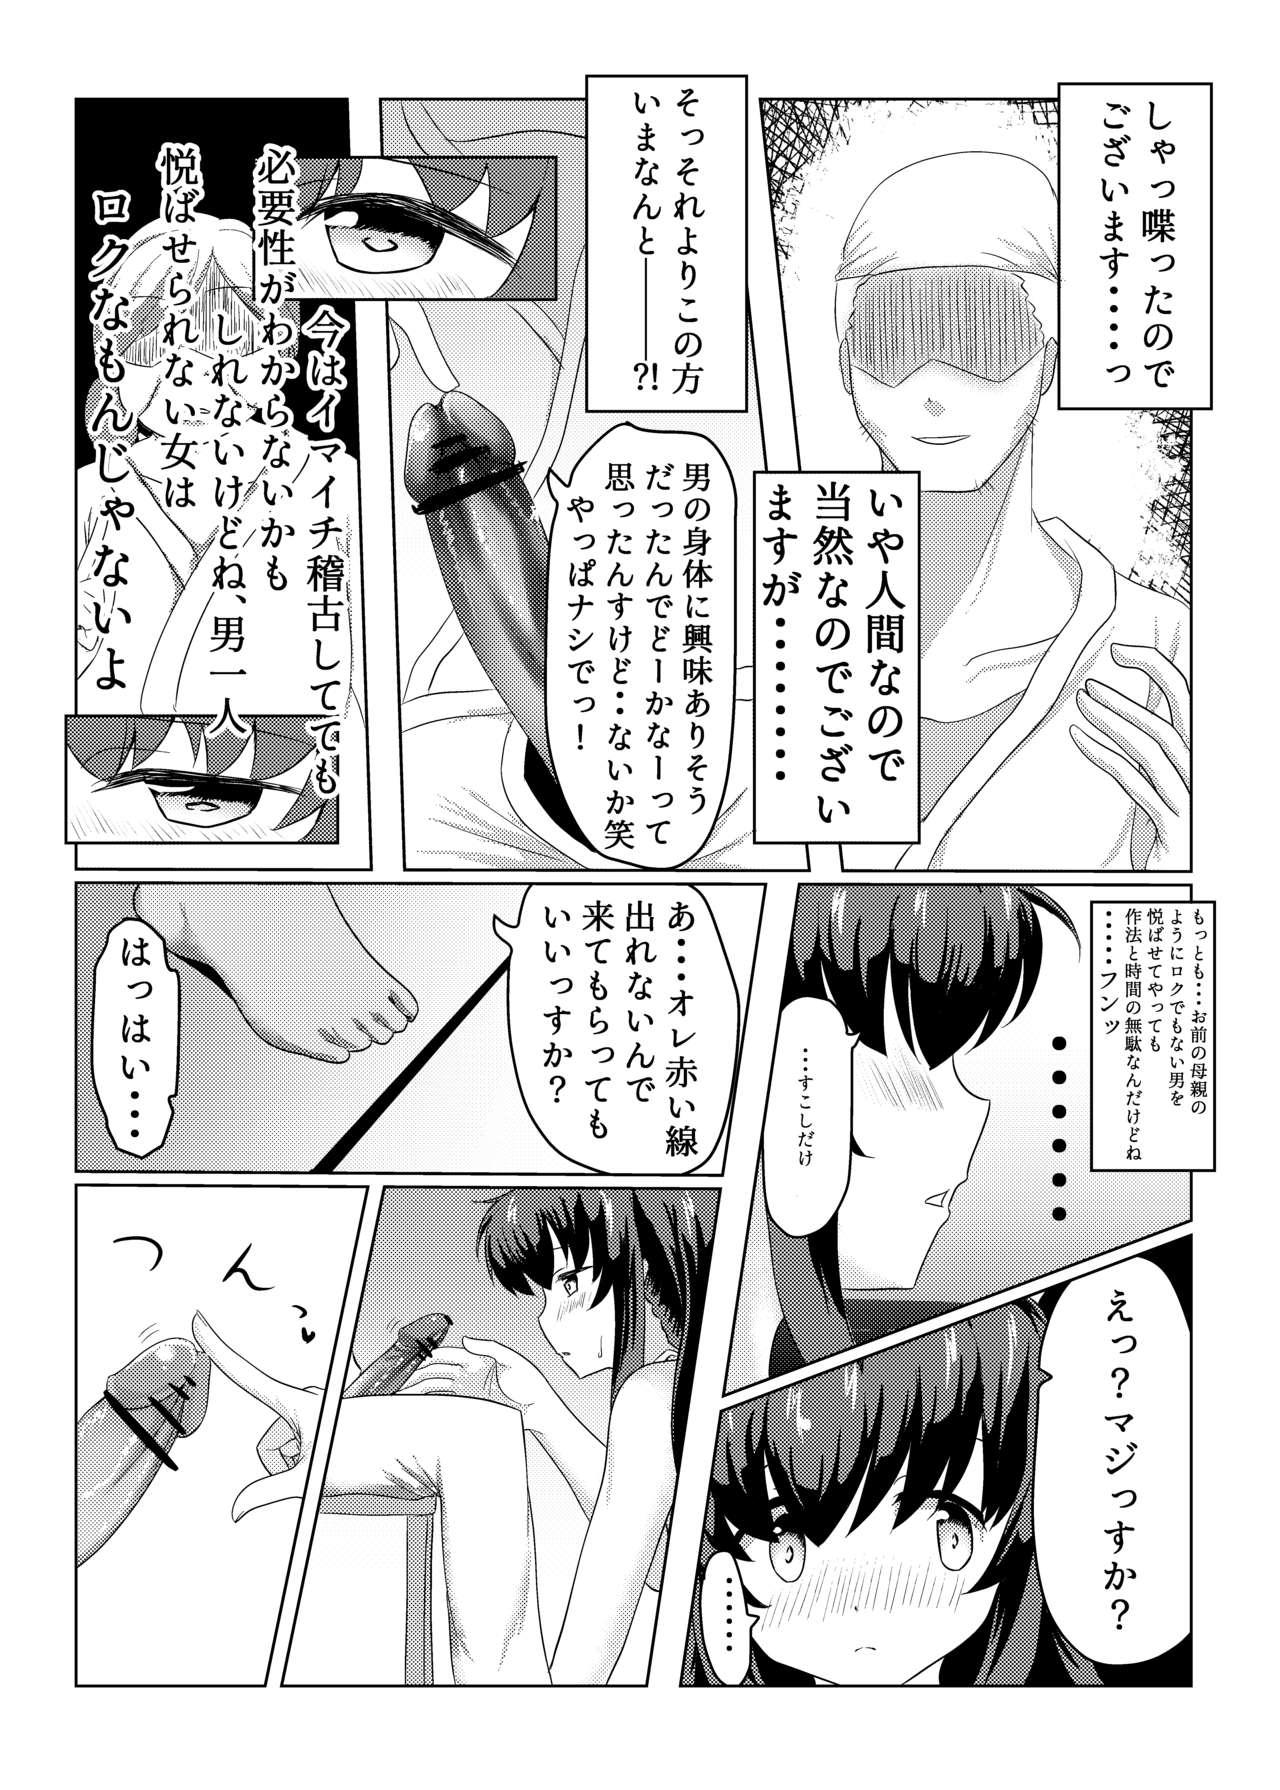 Tit Tsukuyo ga Waruinodegozaimasu - Puella magi madoka magica side story magia record Bisexual - Page 9